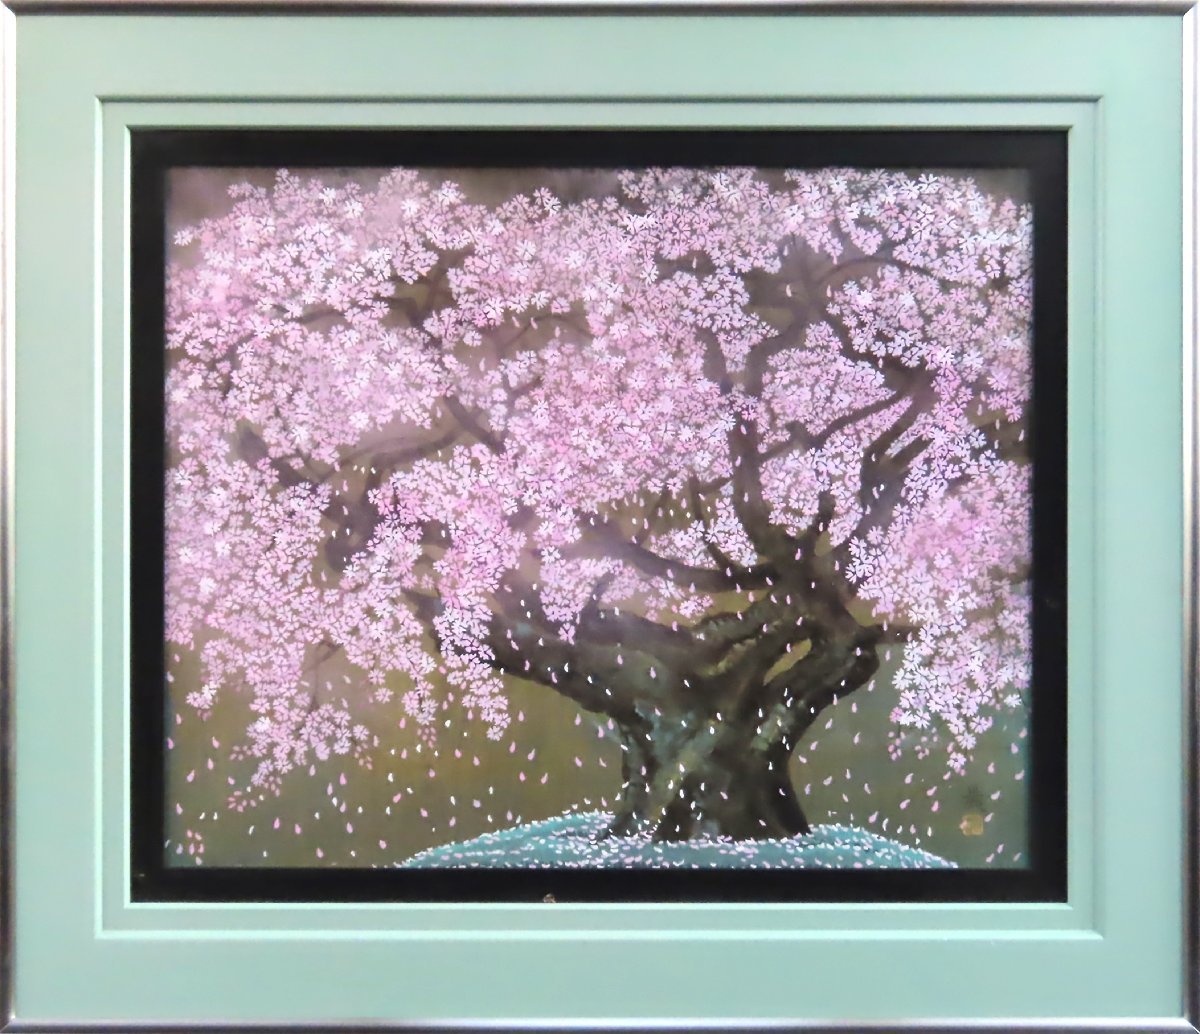 *환상적이고 시적인 일본 화가* 사토 아키라 연묵 벚꽃 15cm 환상적인 벚꽃을 섬세하게 그린 [마사미 갤러리, 5000여점 전시] G, 그림, 일본화, 꽃과 새, 야생 동물